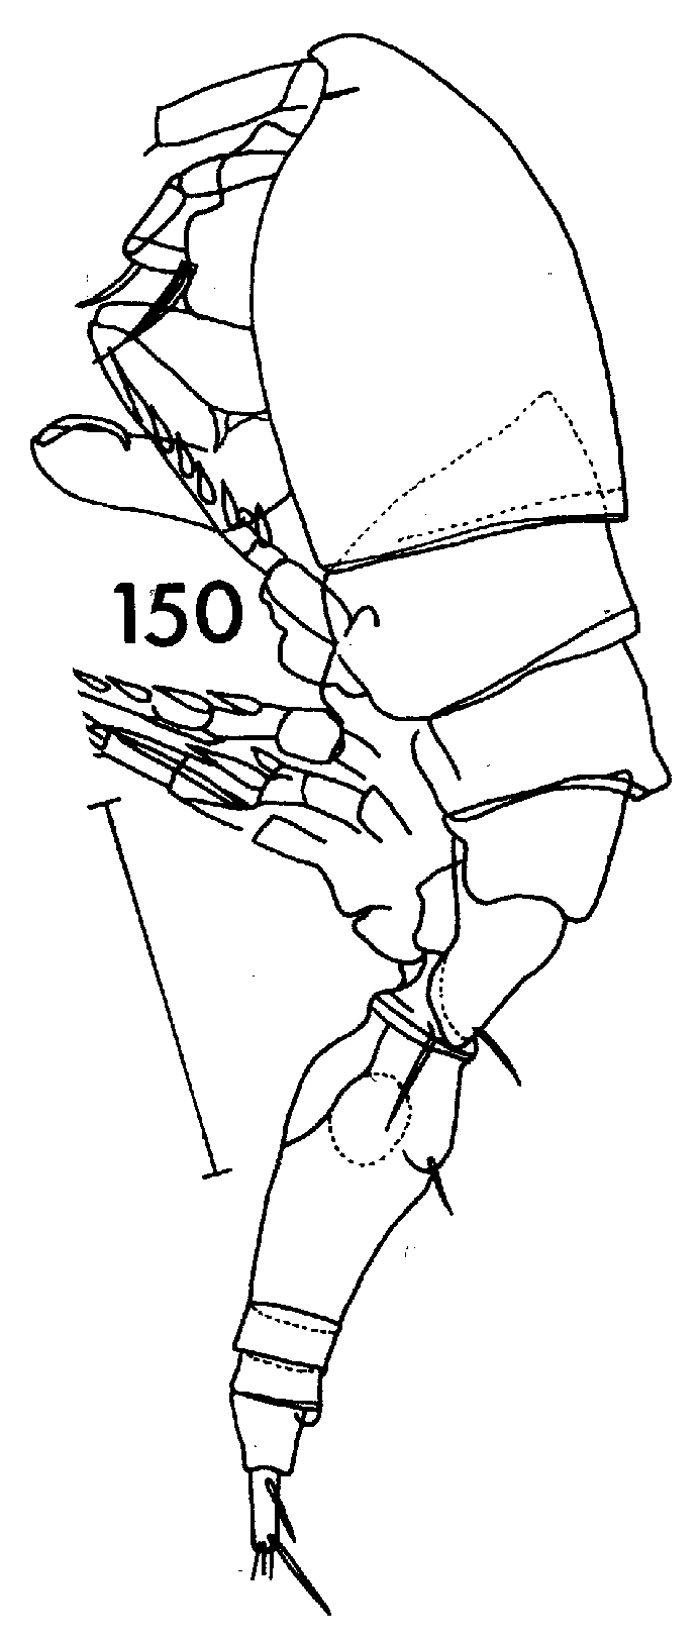 Espèce Triconia conifera - Planche 5 de figures morphologiques